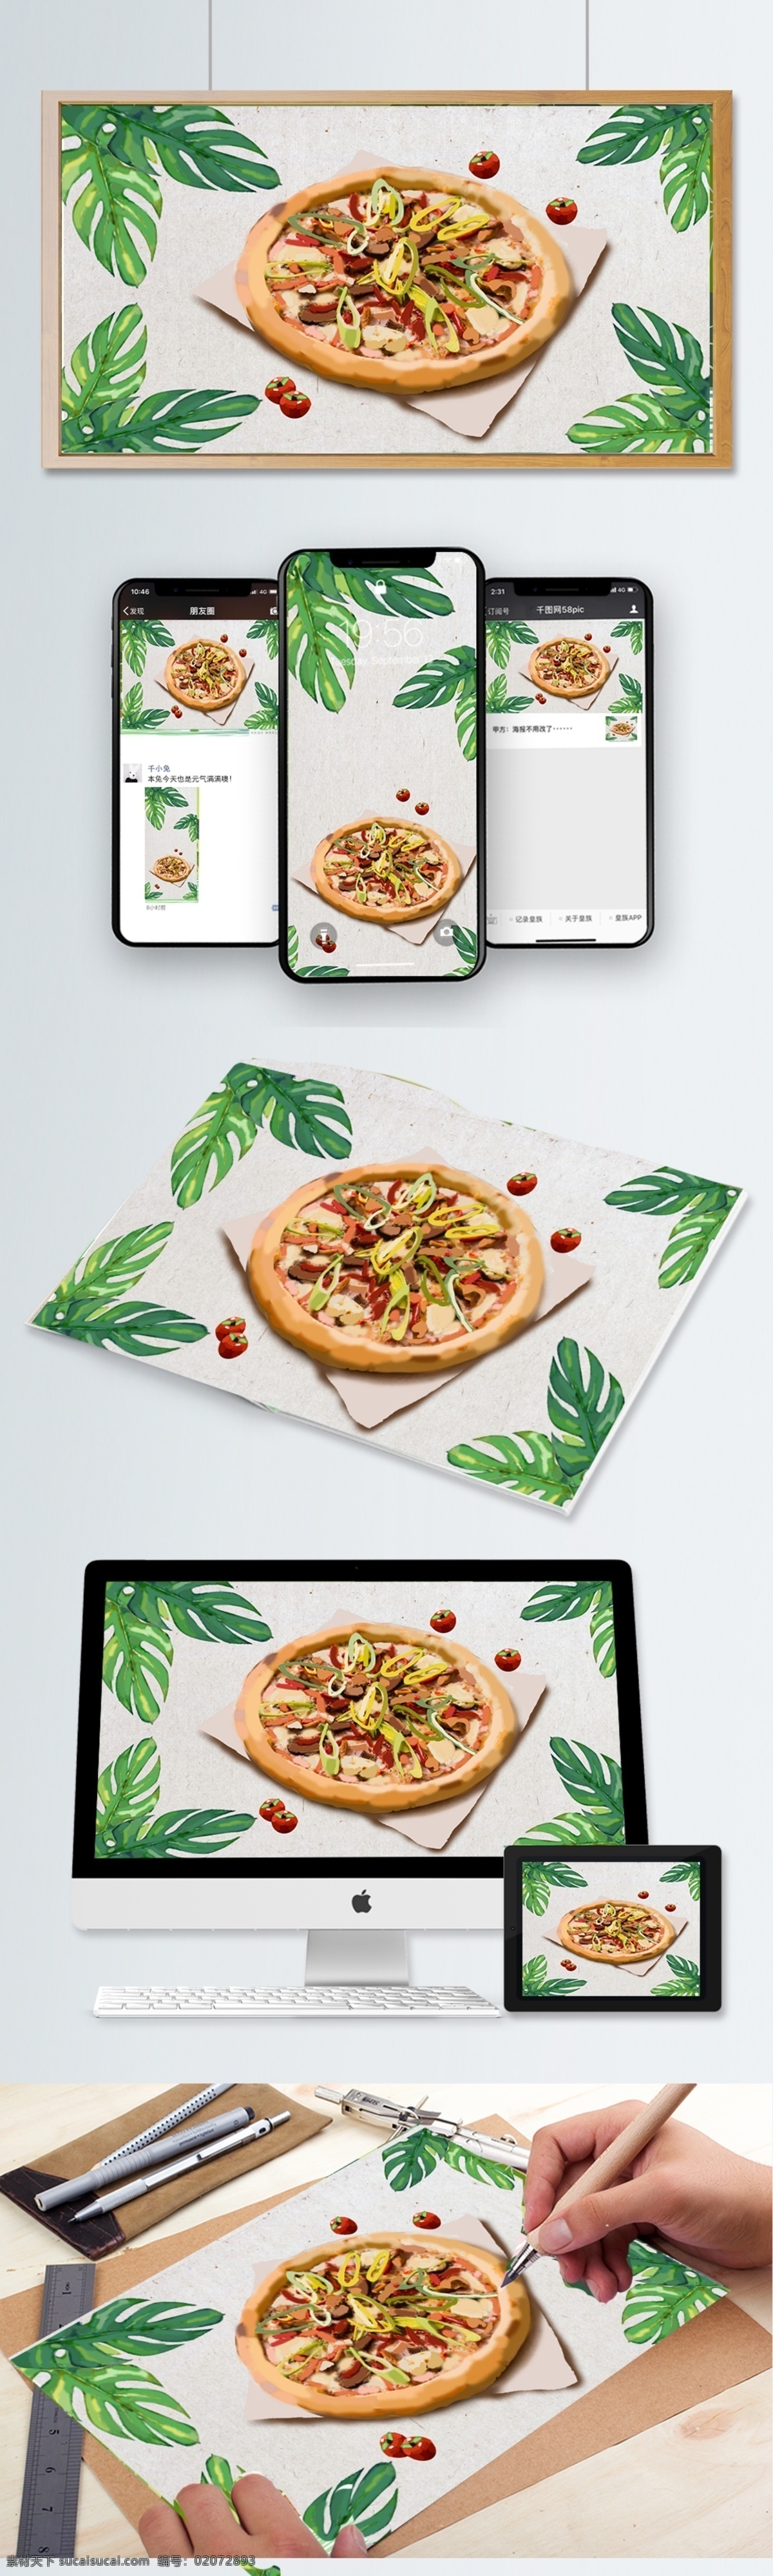 原创 写实 插画 手绘 美食 食物 披萨 pizza 西餐 烤肉披萨 芝士 快餐